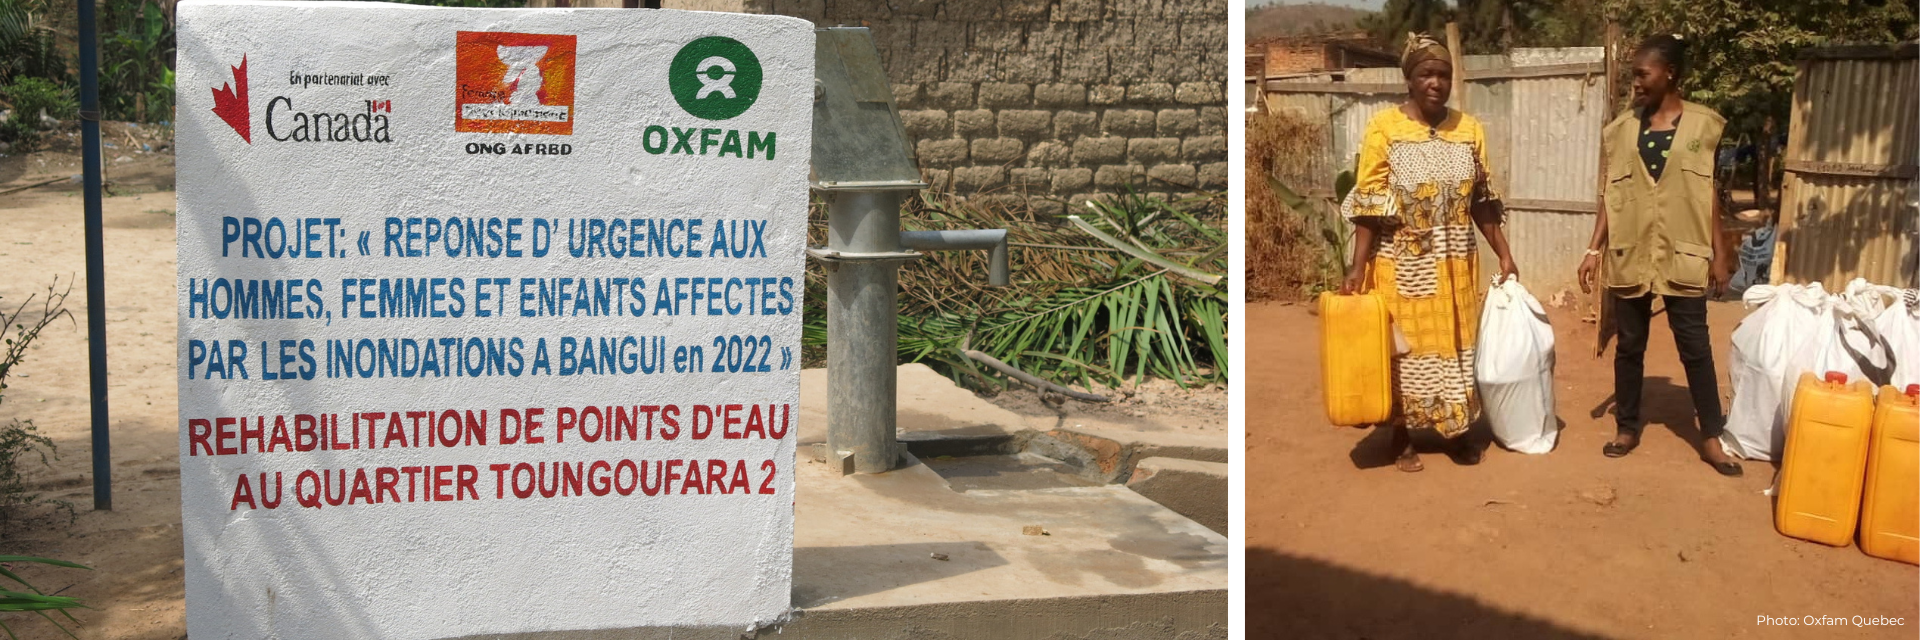 Humanitarian program announcement in Bangui